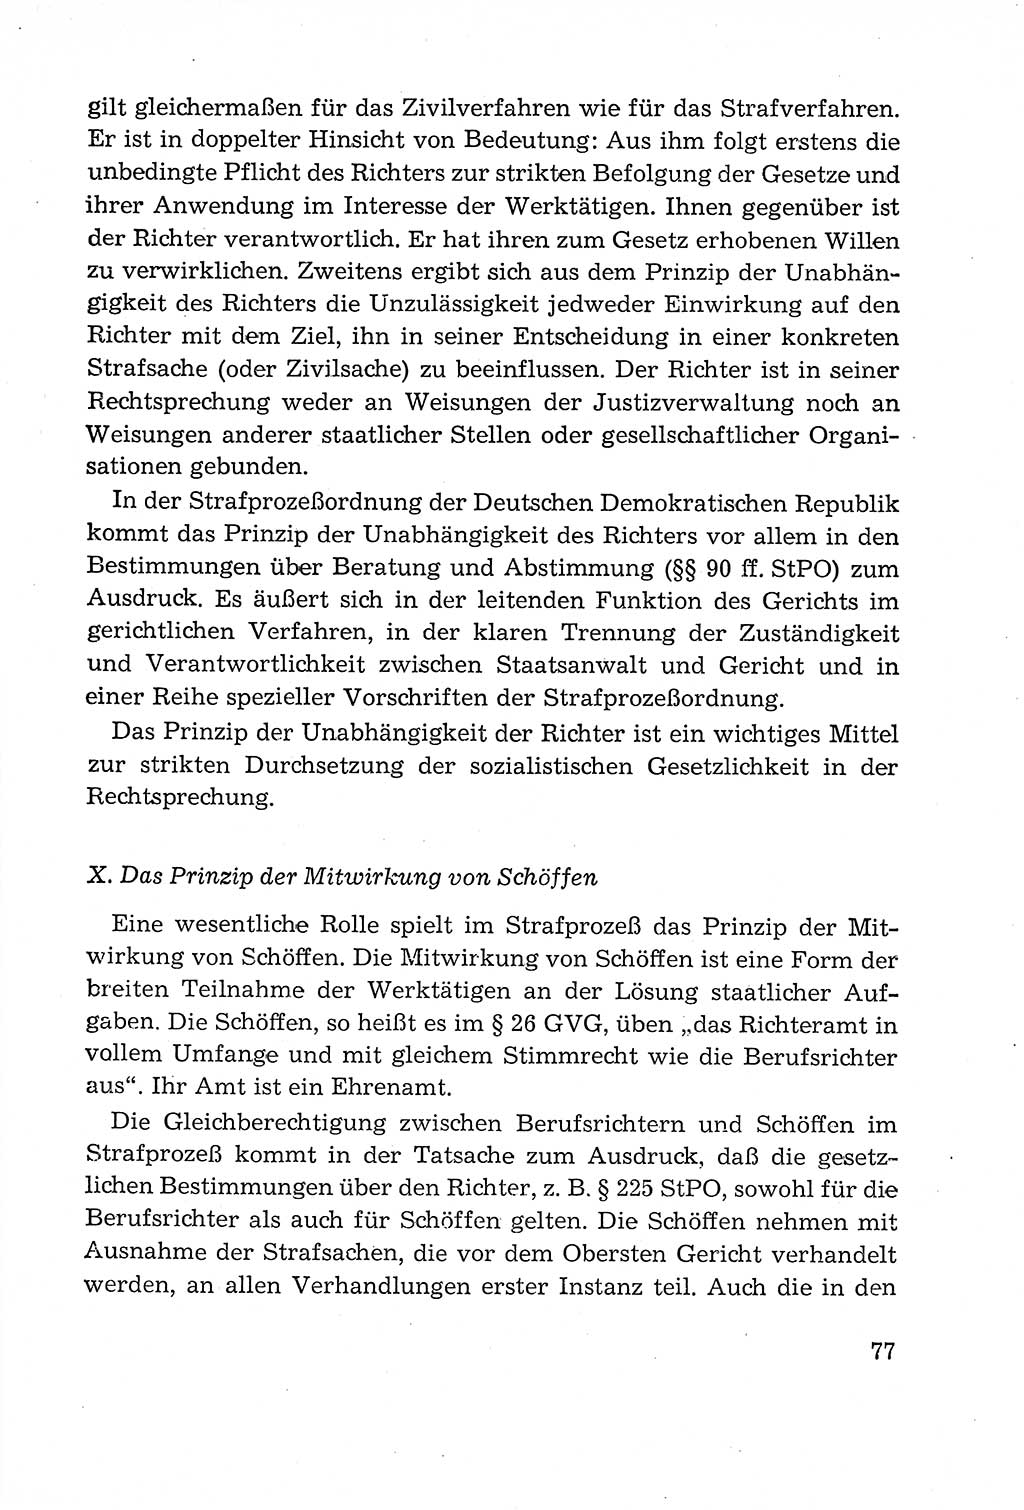 Leitfaden des Strafprozeßrechts der Deutschen Demokratischen Republik (DDR) 1959, Seite 77 (LF StPR DDR 1959, S. 77)